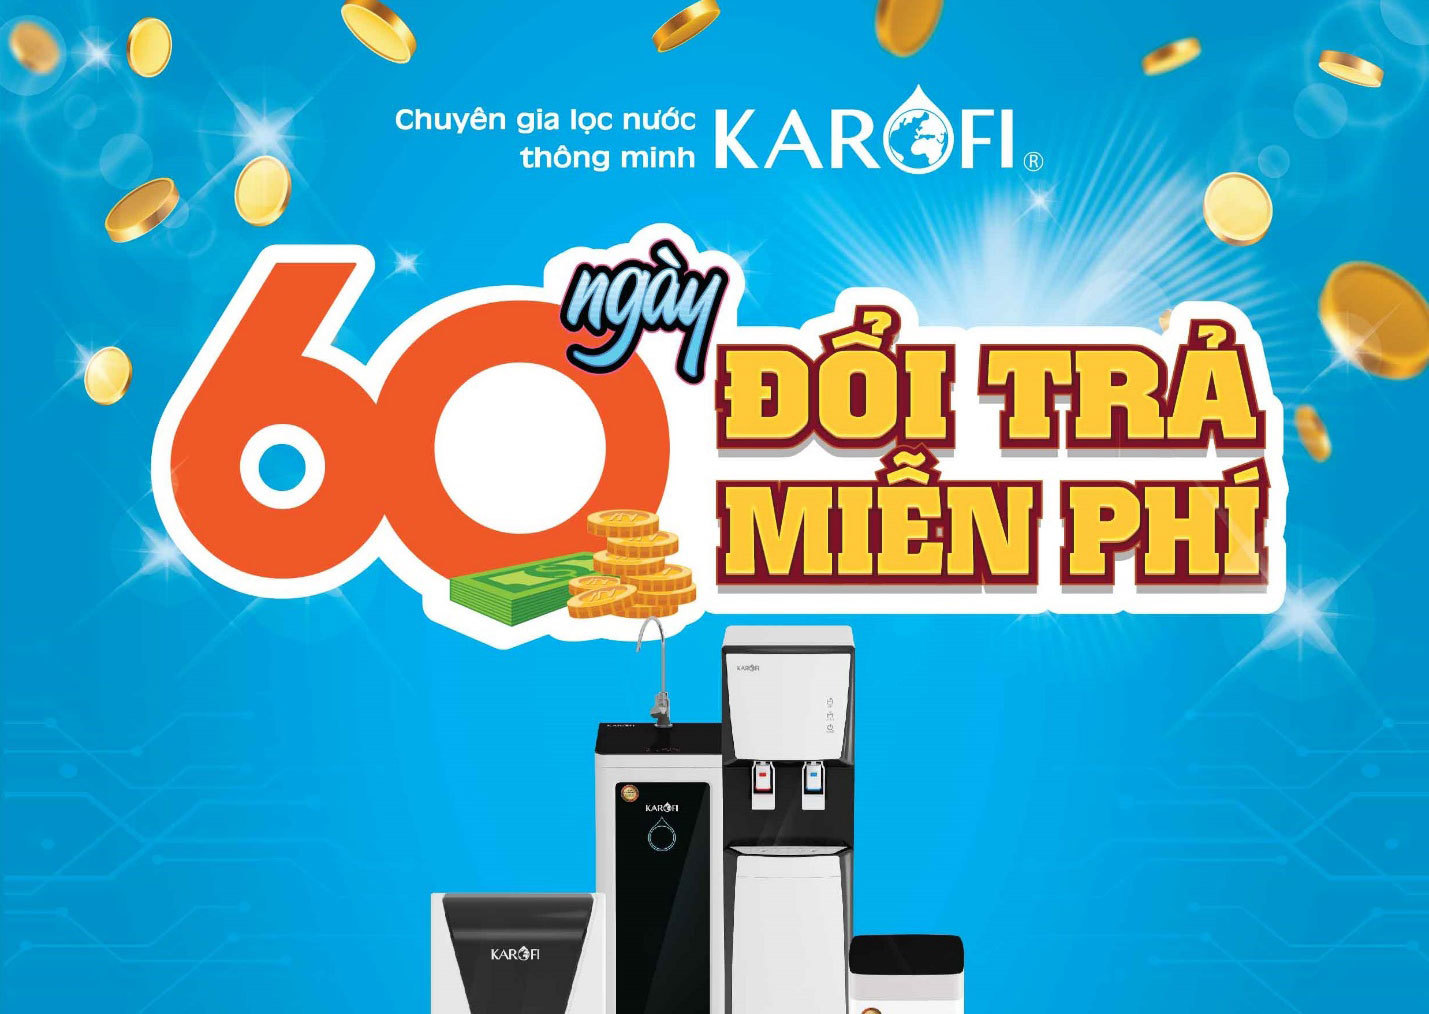 3 lý do Karofi sẵn sàng đổi trả hàng miễn phí tới 60 ngày